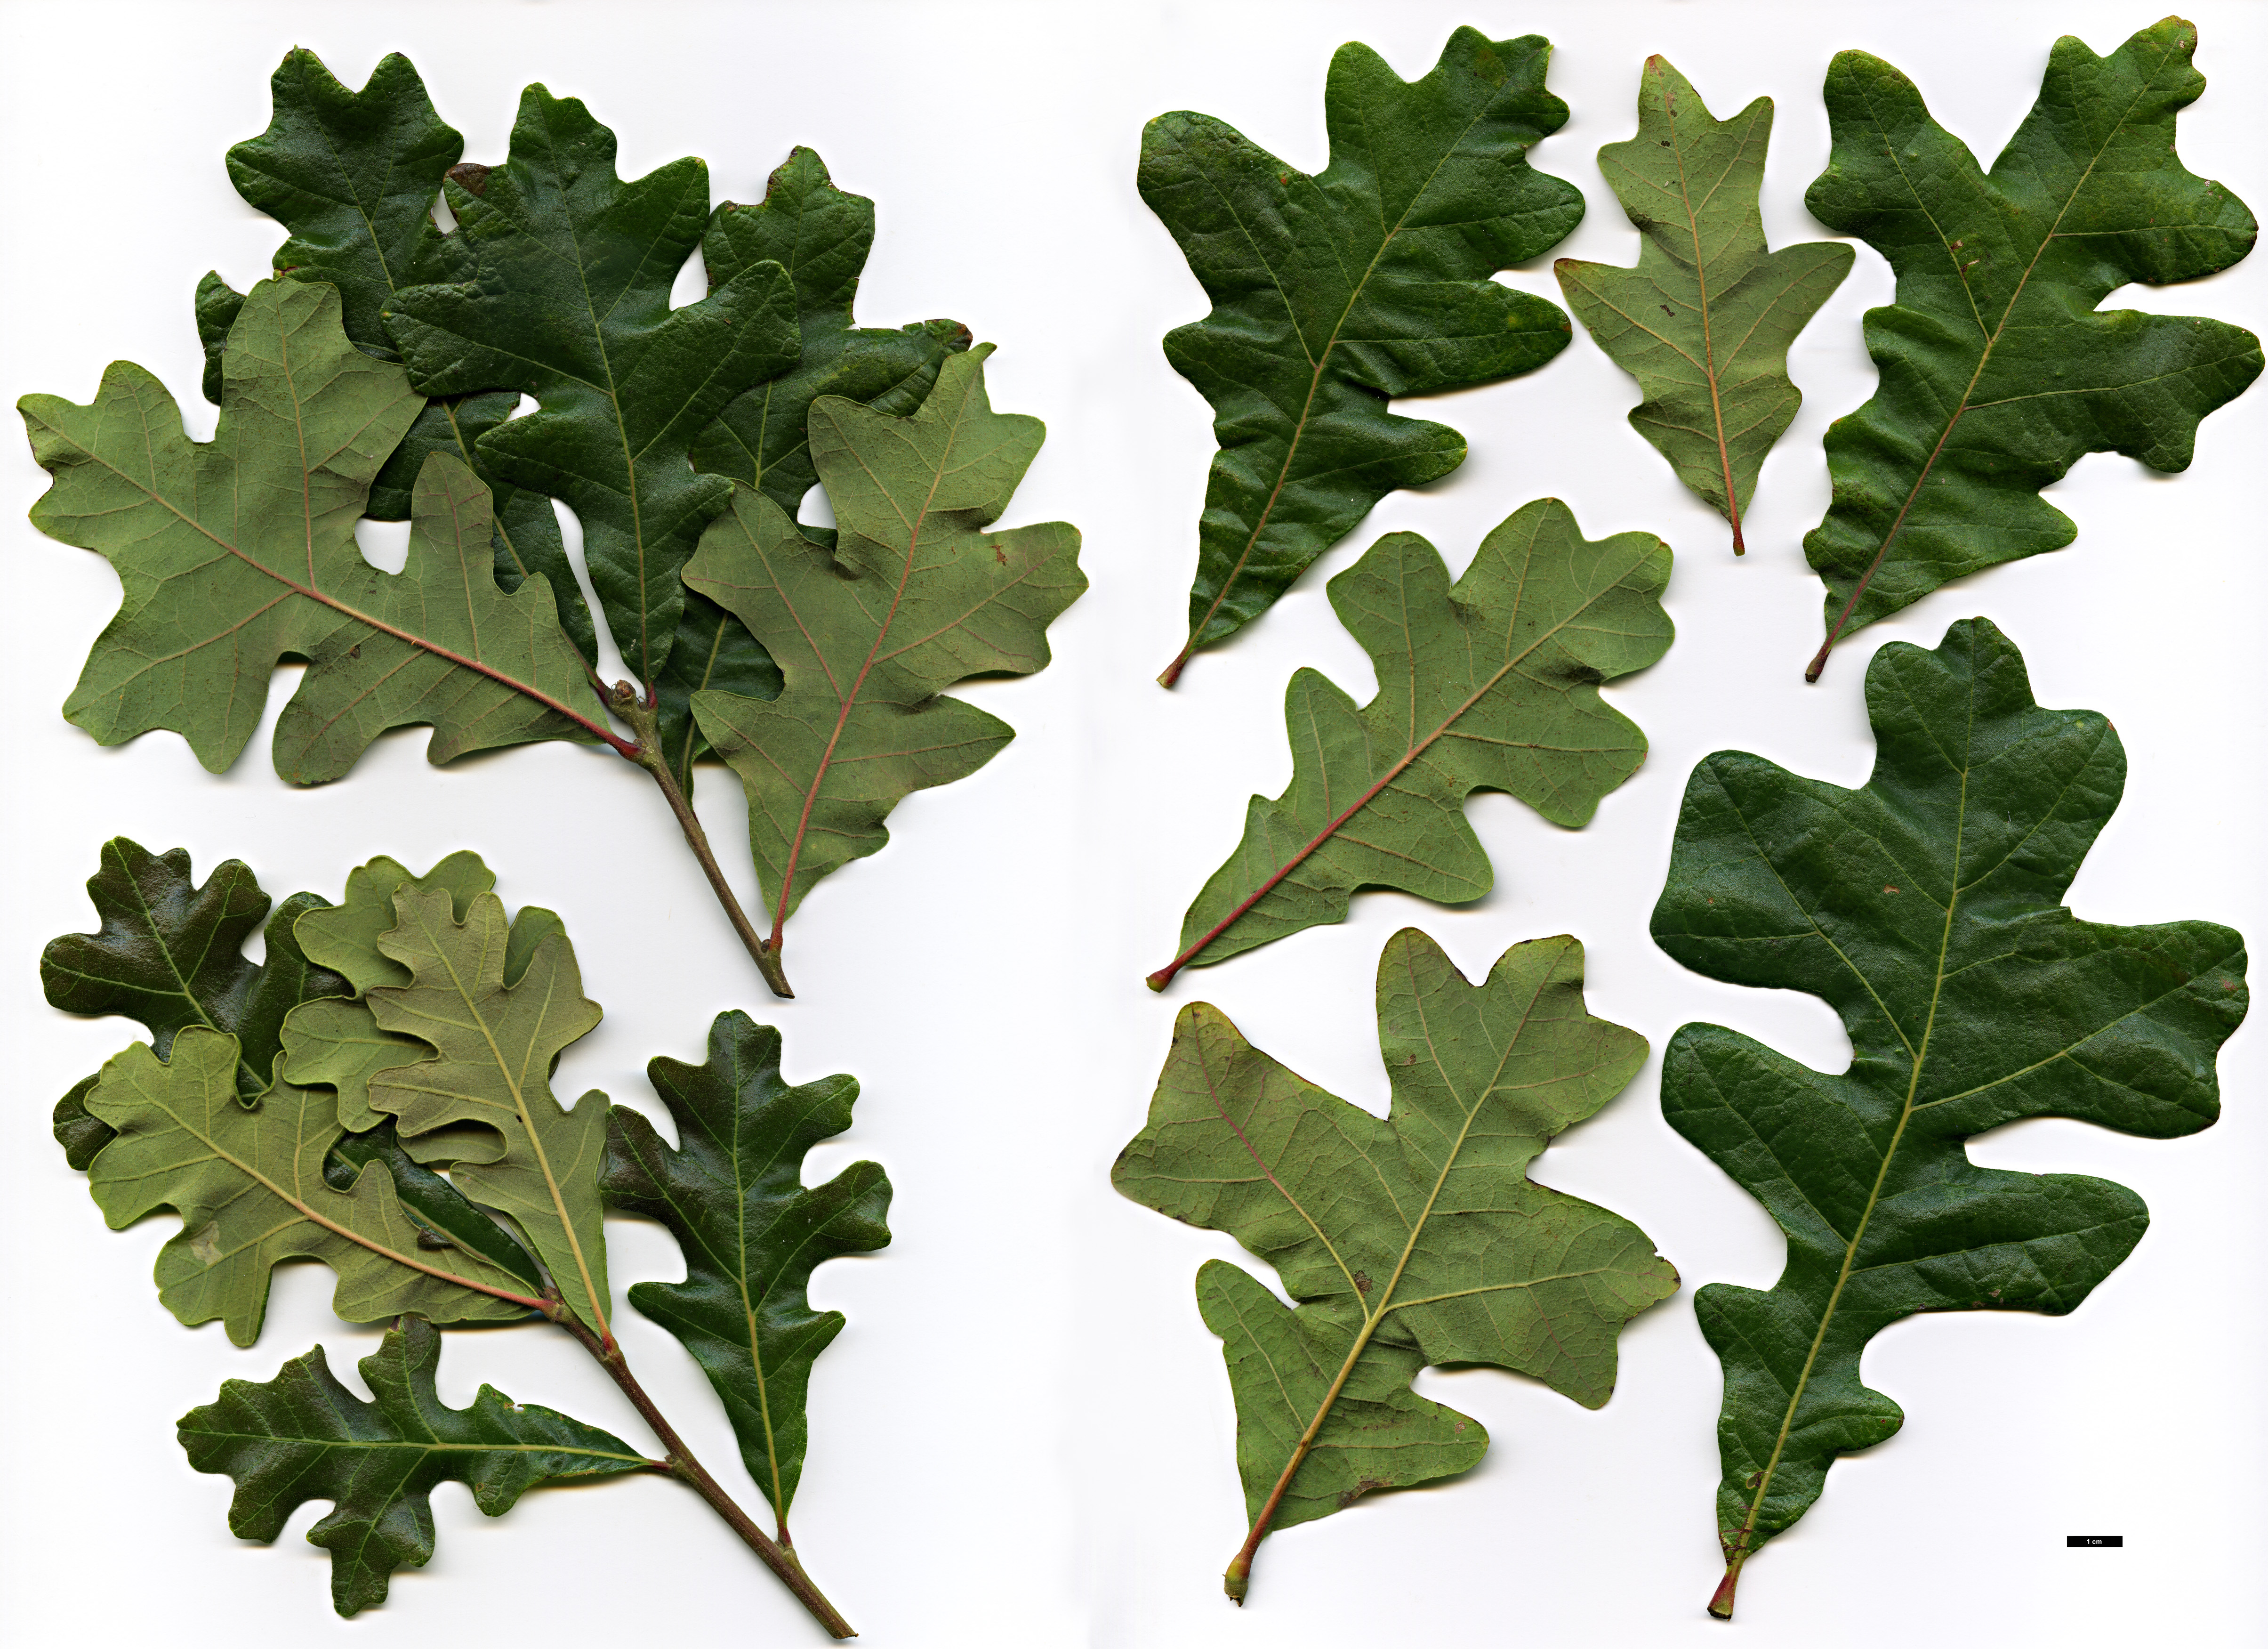 High resolution image: Family: Fagaceae - Genus: Quercus - Taxon: ×guadalupensis (Q.macrocarpa × Q.stellata)